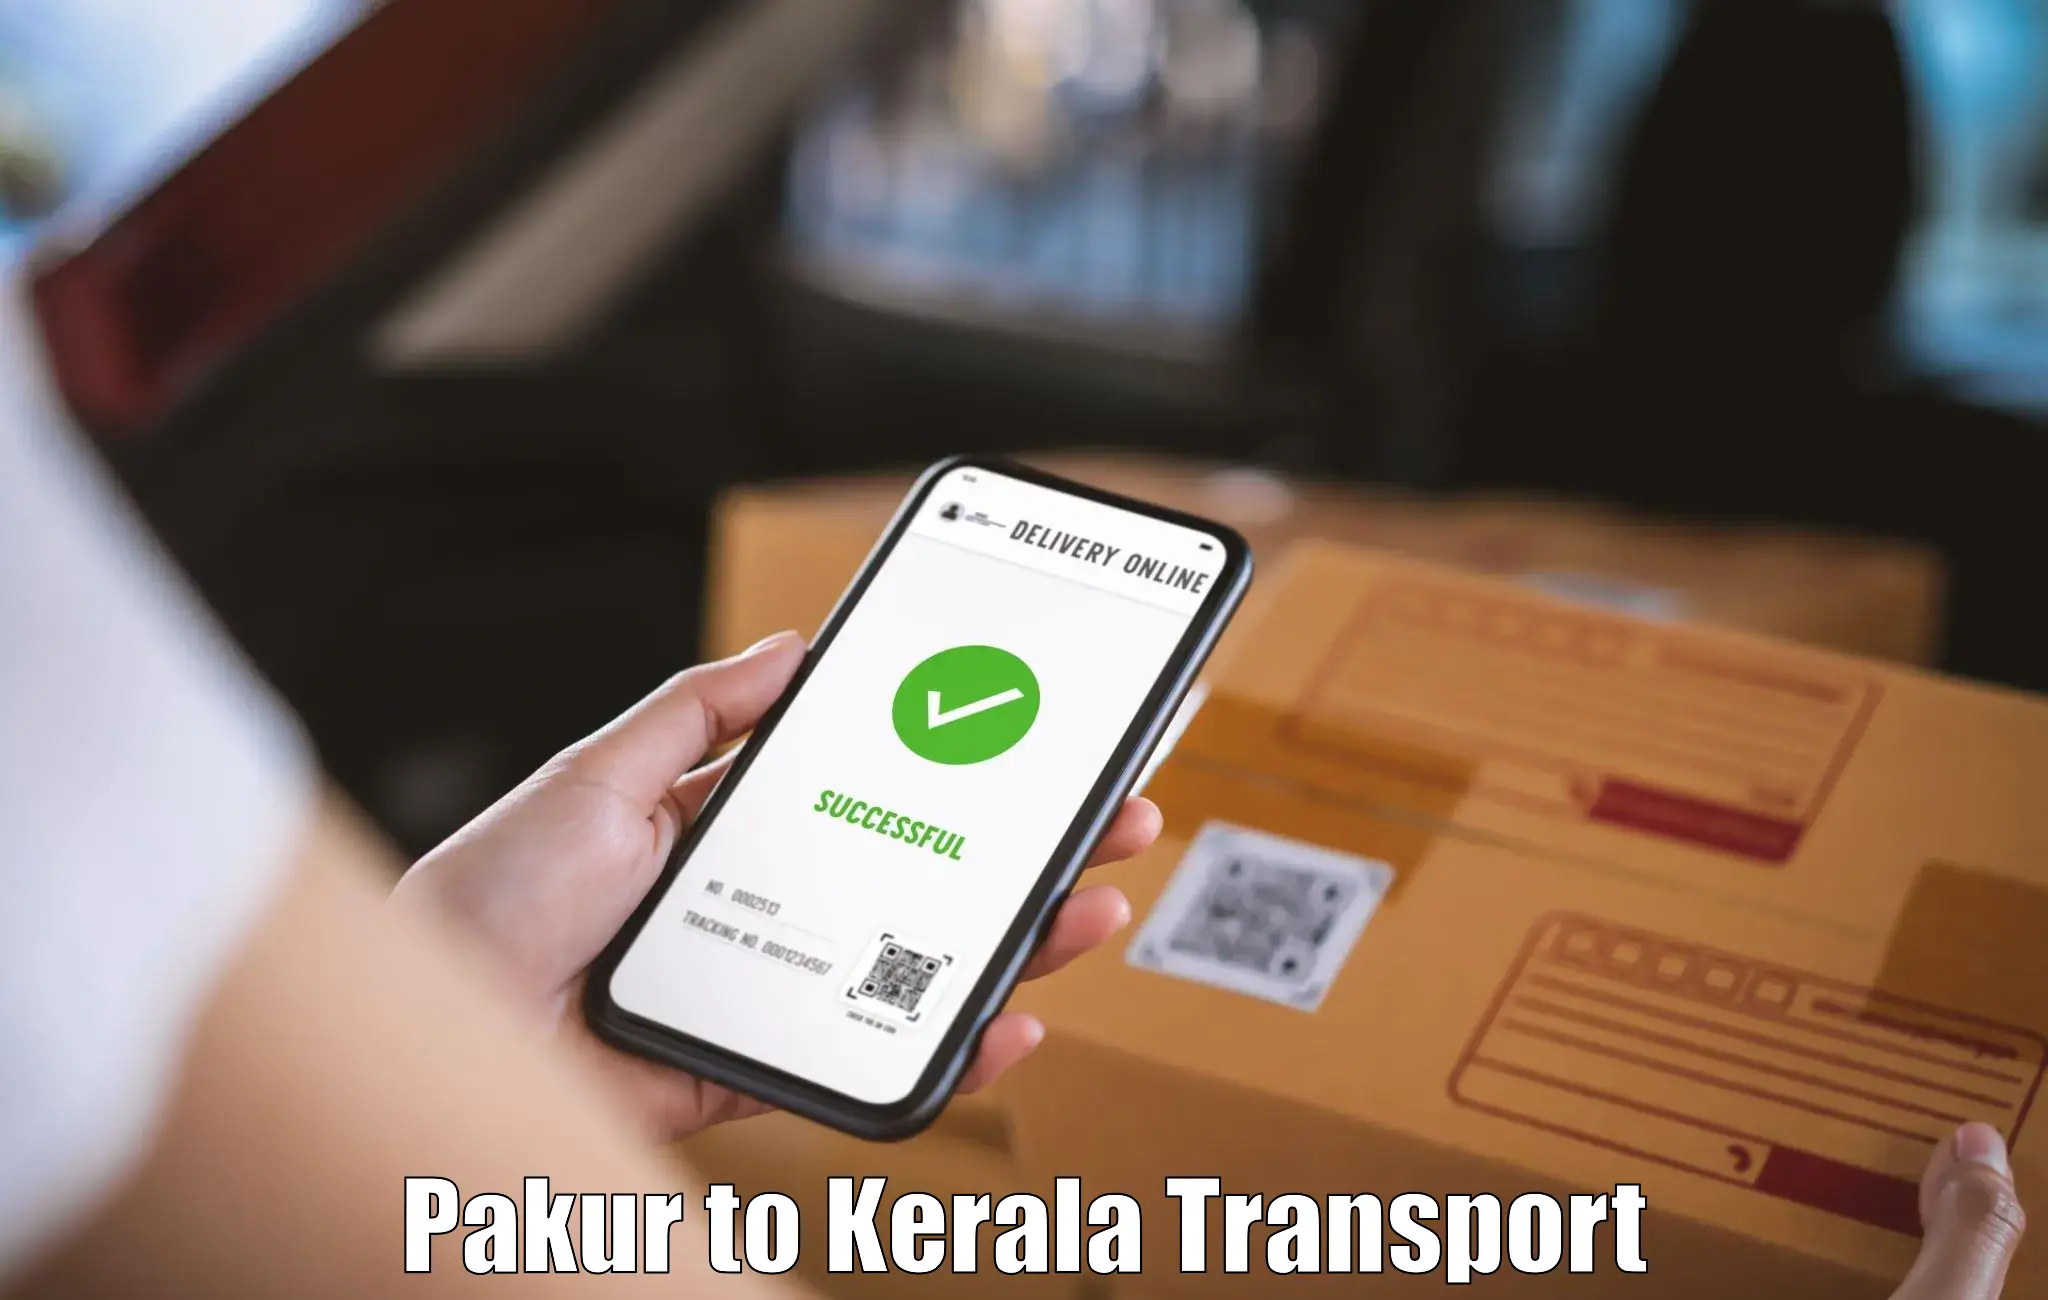 Pick up transport service Pakur to Karukachal